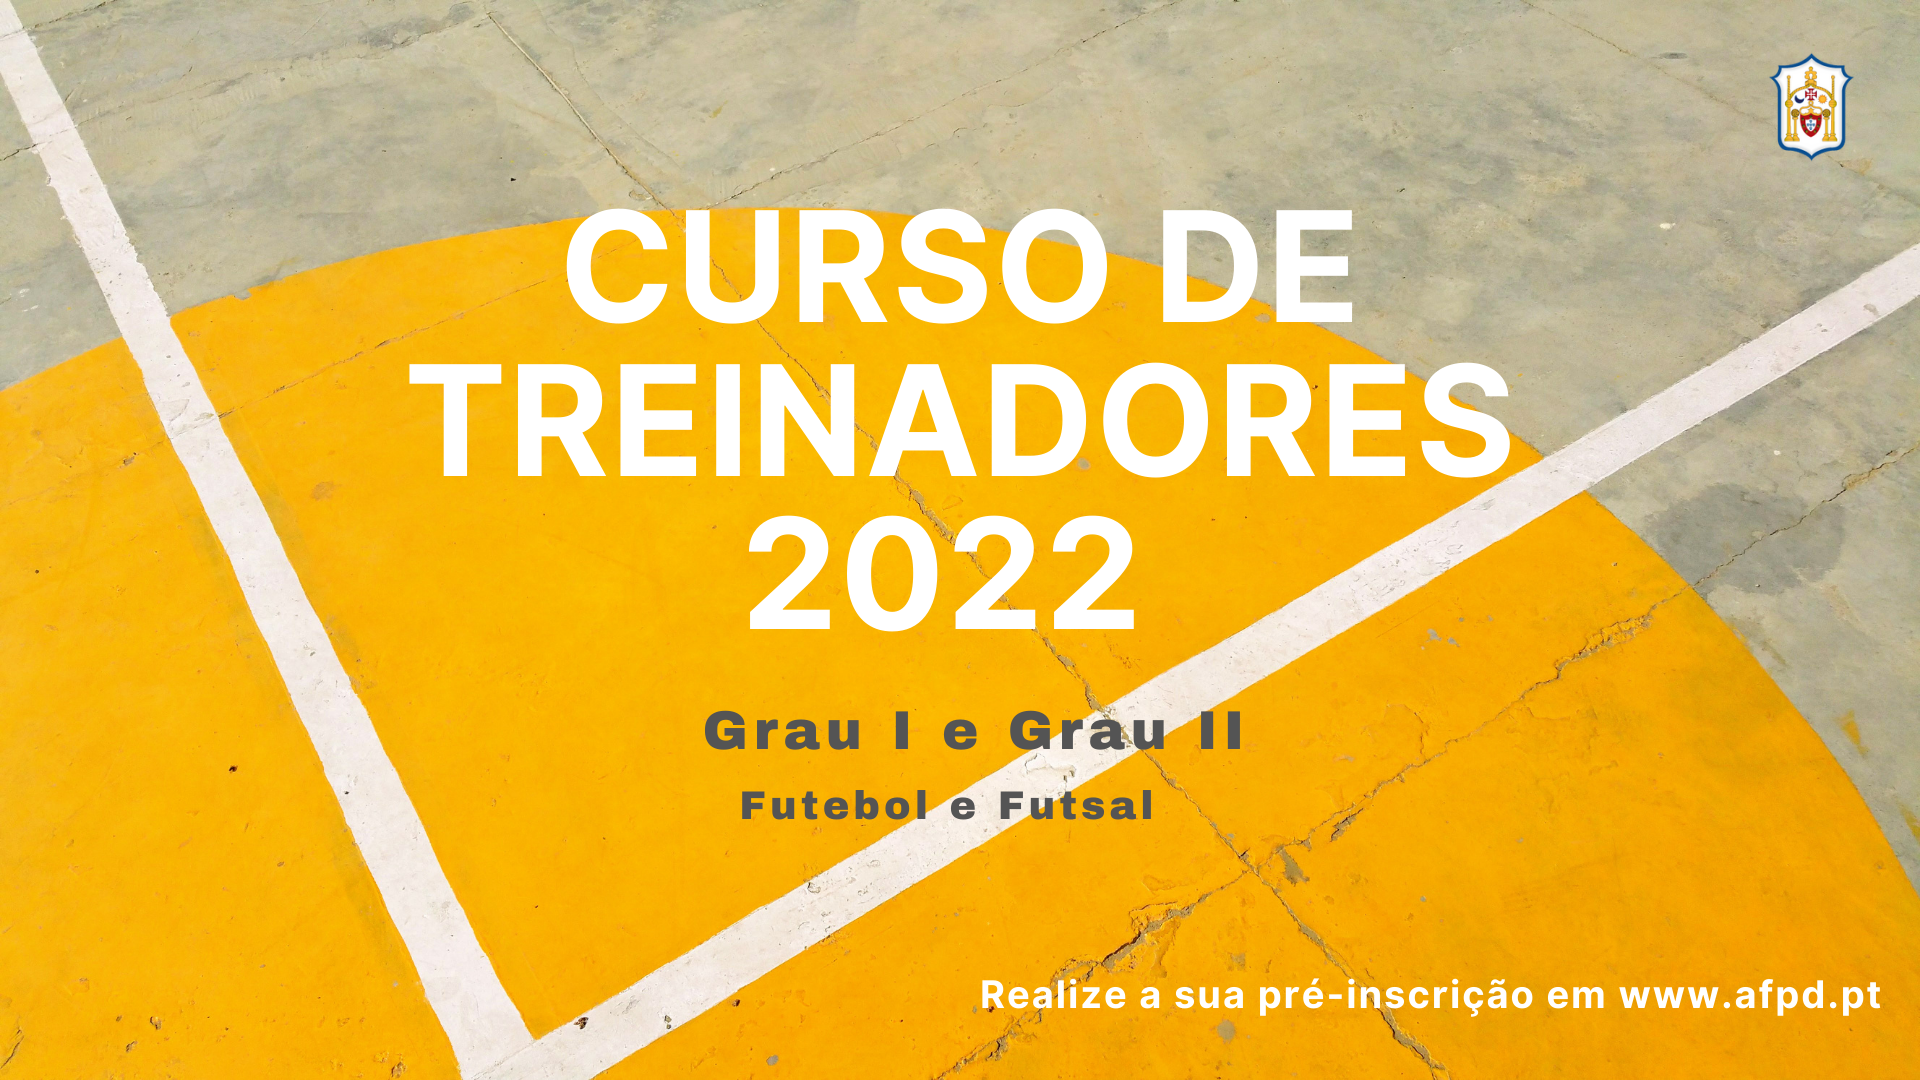 Curso de Treinadores 2022 - Grau I e Grau II - Futebol e Futsal